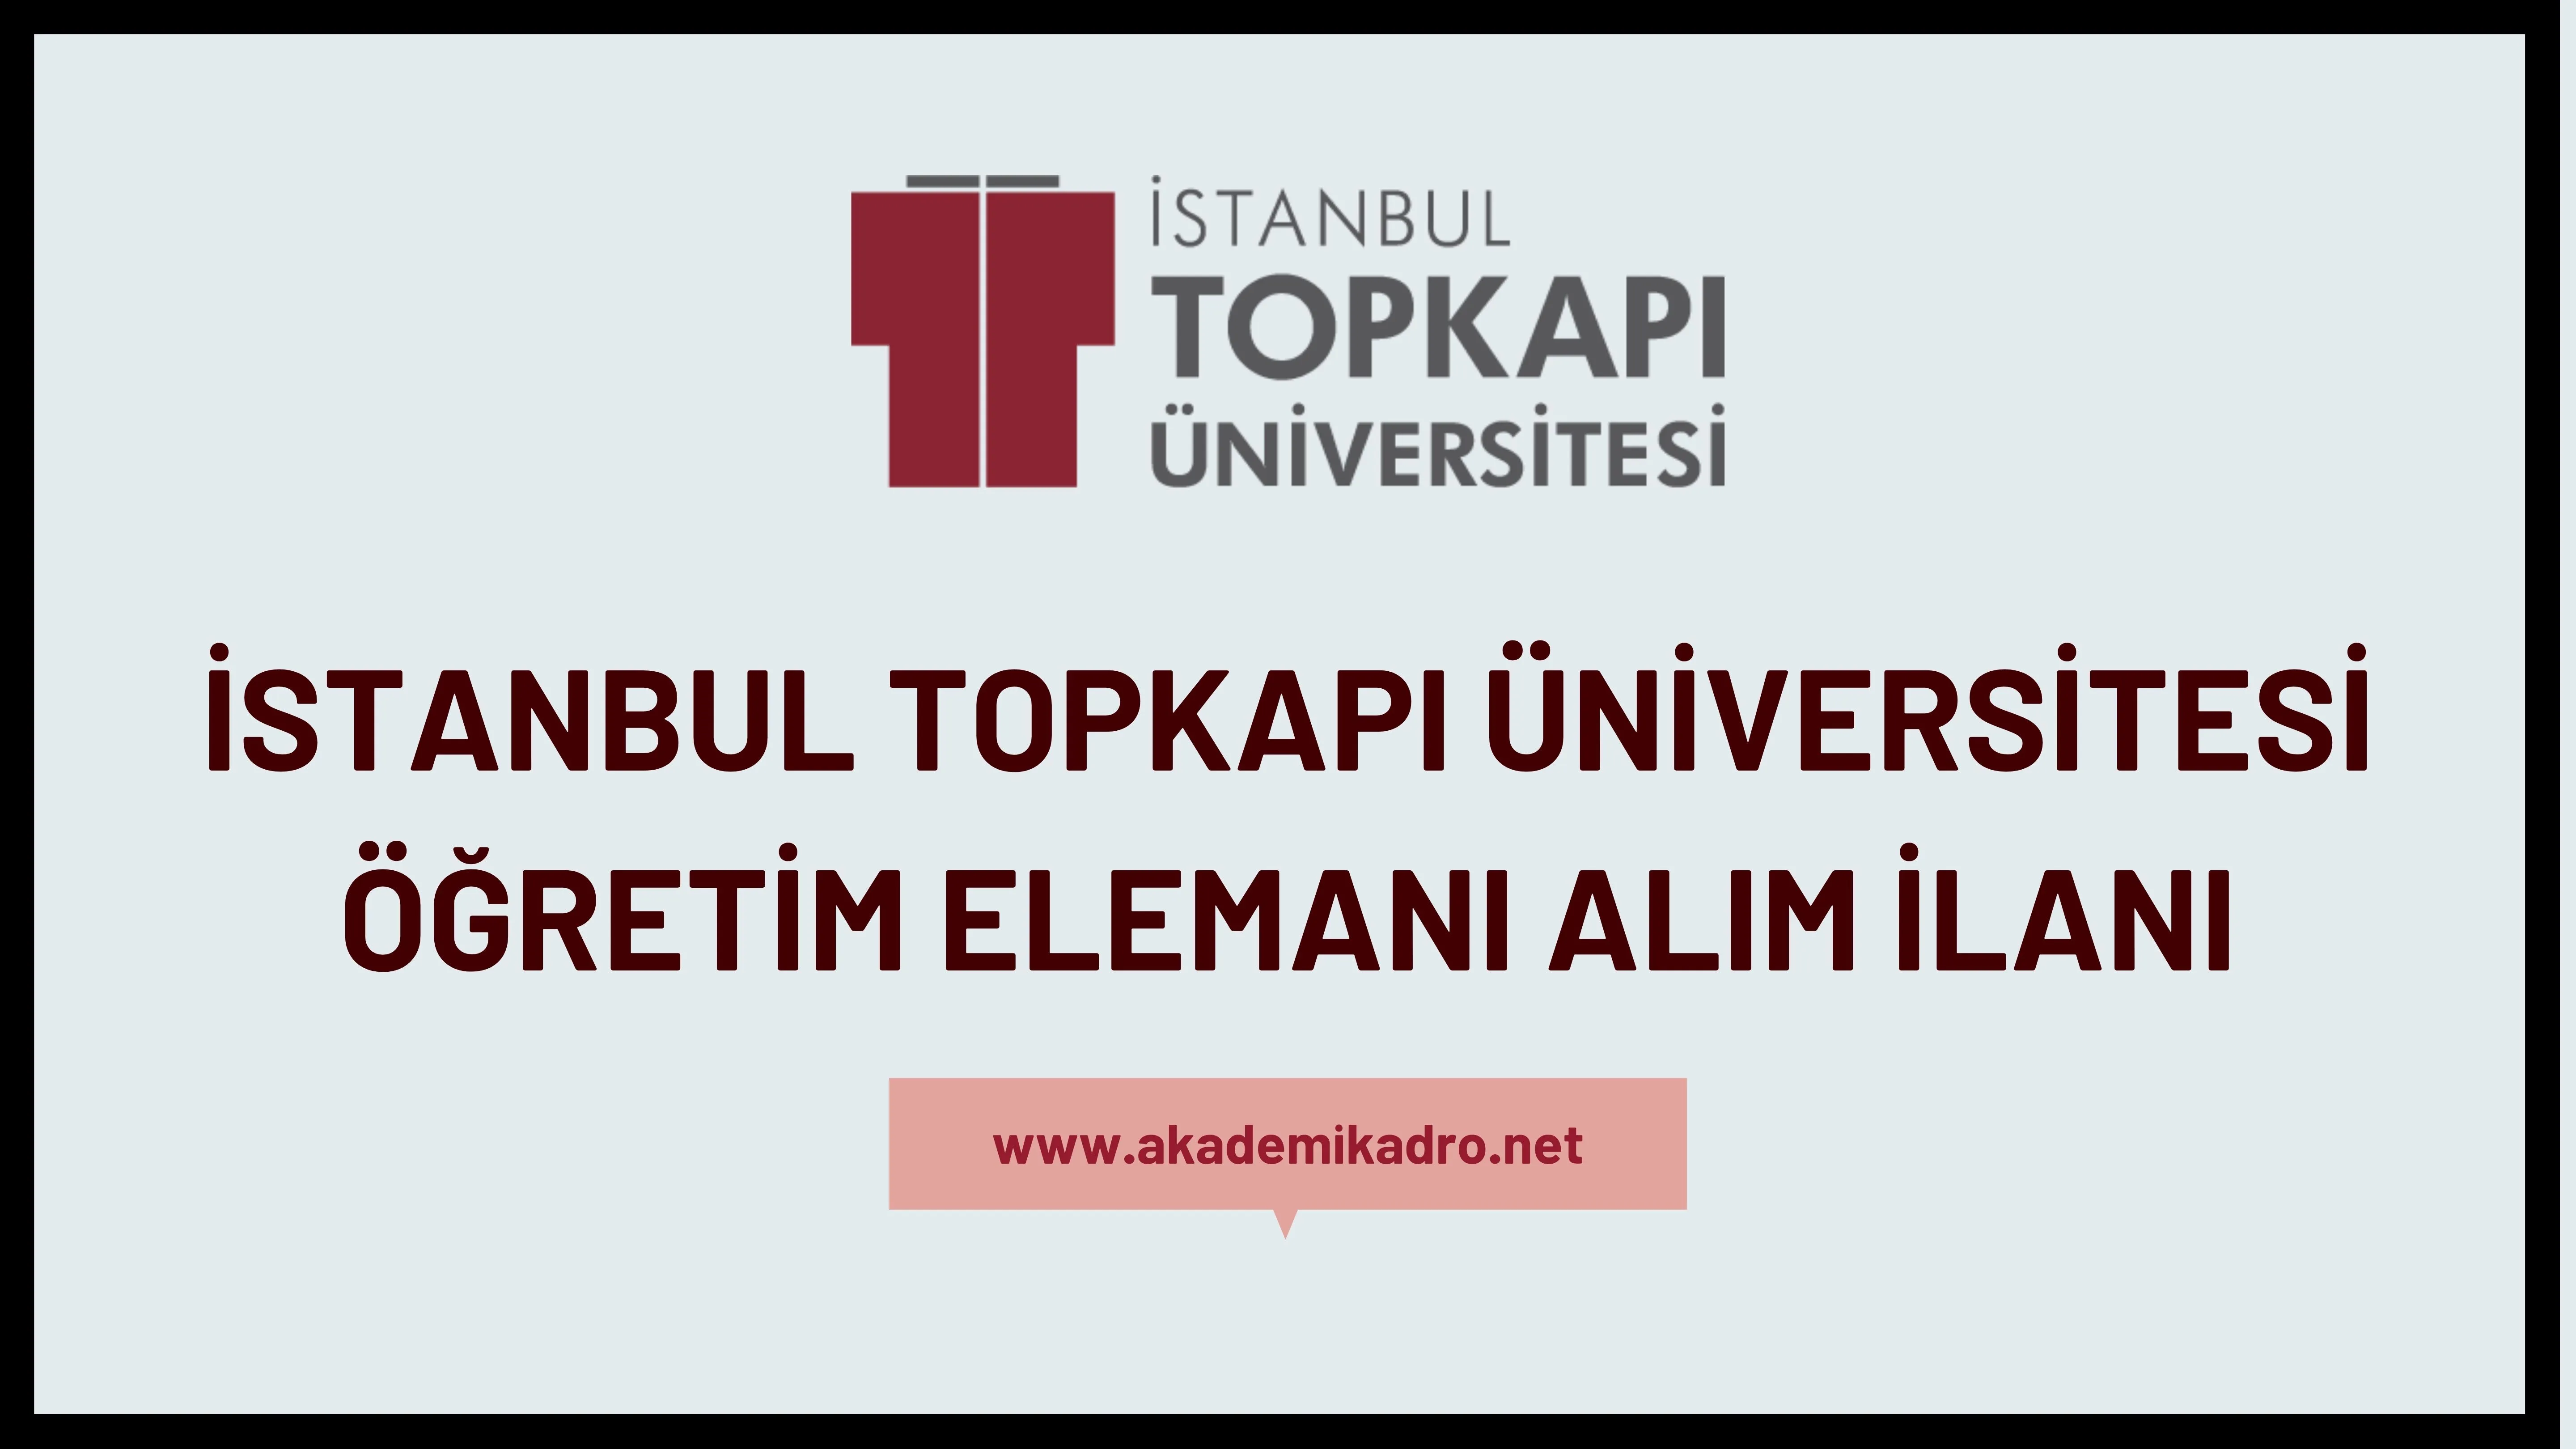 İstanbul Topkapı Üniversitesi Araştırma görevlisi, Öğretim görevlisi ve öğretim üyesi alacak.